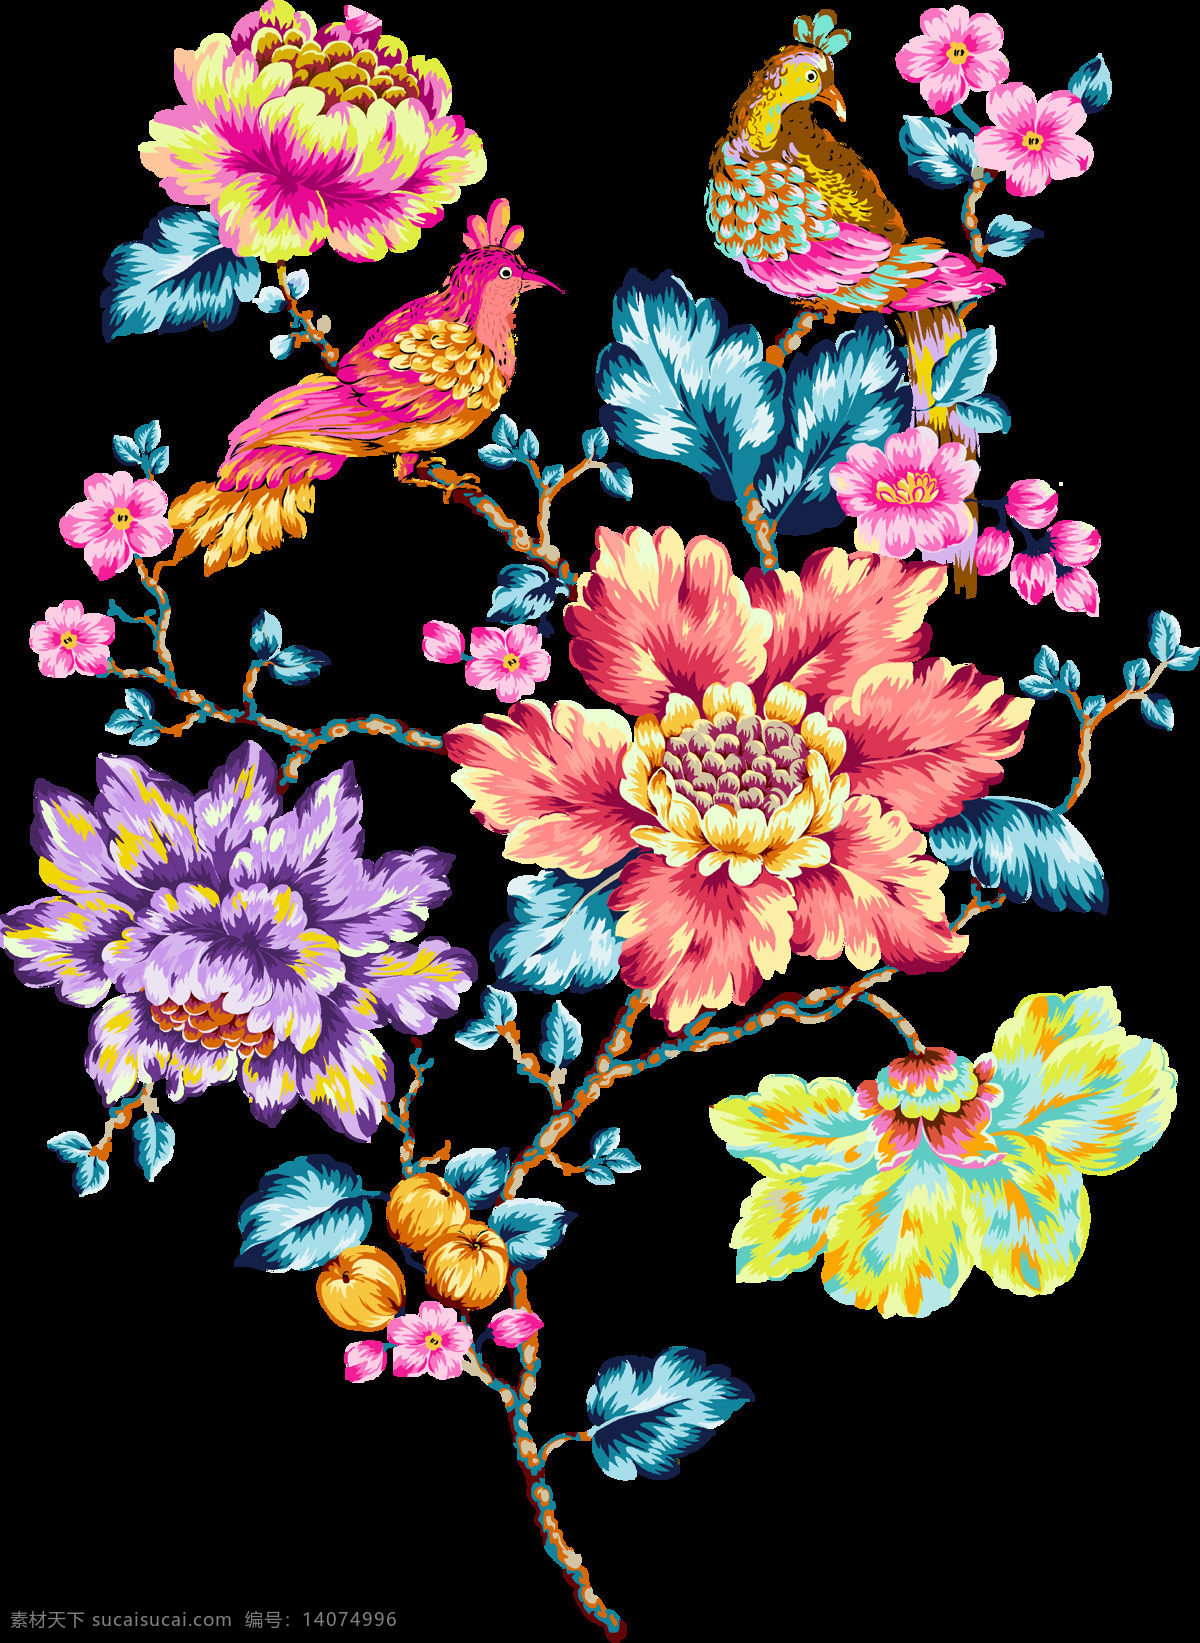 手绘 水彩 花卉 透明 装饰 图 鲜艳 亮眼 两只小鸟 蓝色叶子 透明素材 免扣素材 装饰图片